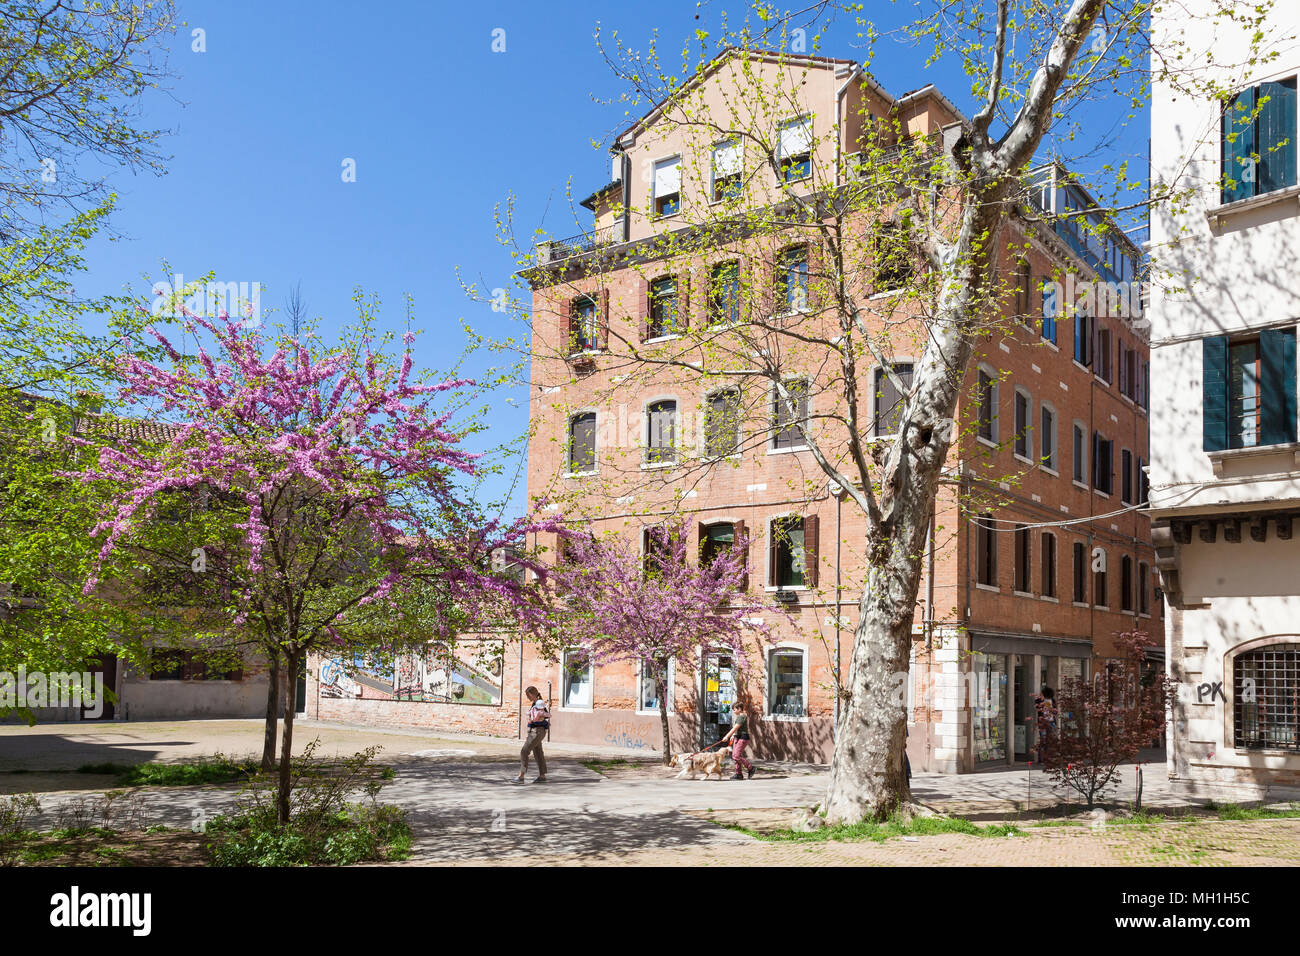 Venedig im Frühling, rosa Blüte an Bäumen in Campiello di Arras, Dorsoduro  Venedig, Venetien, Italien mit einem Jungen zu einem Hund Stockfotografie -  Alamy